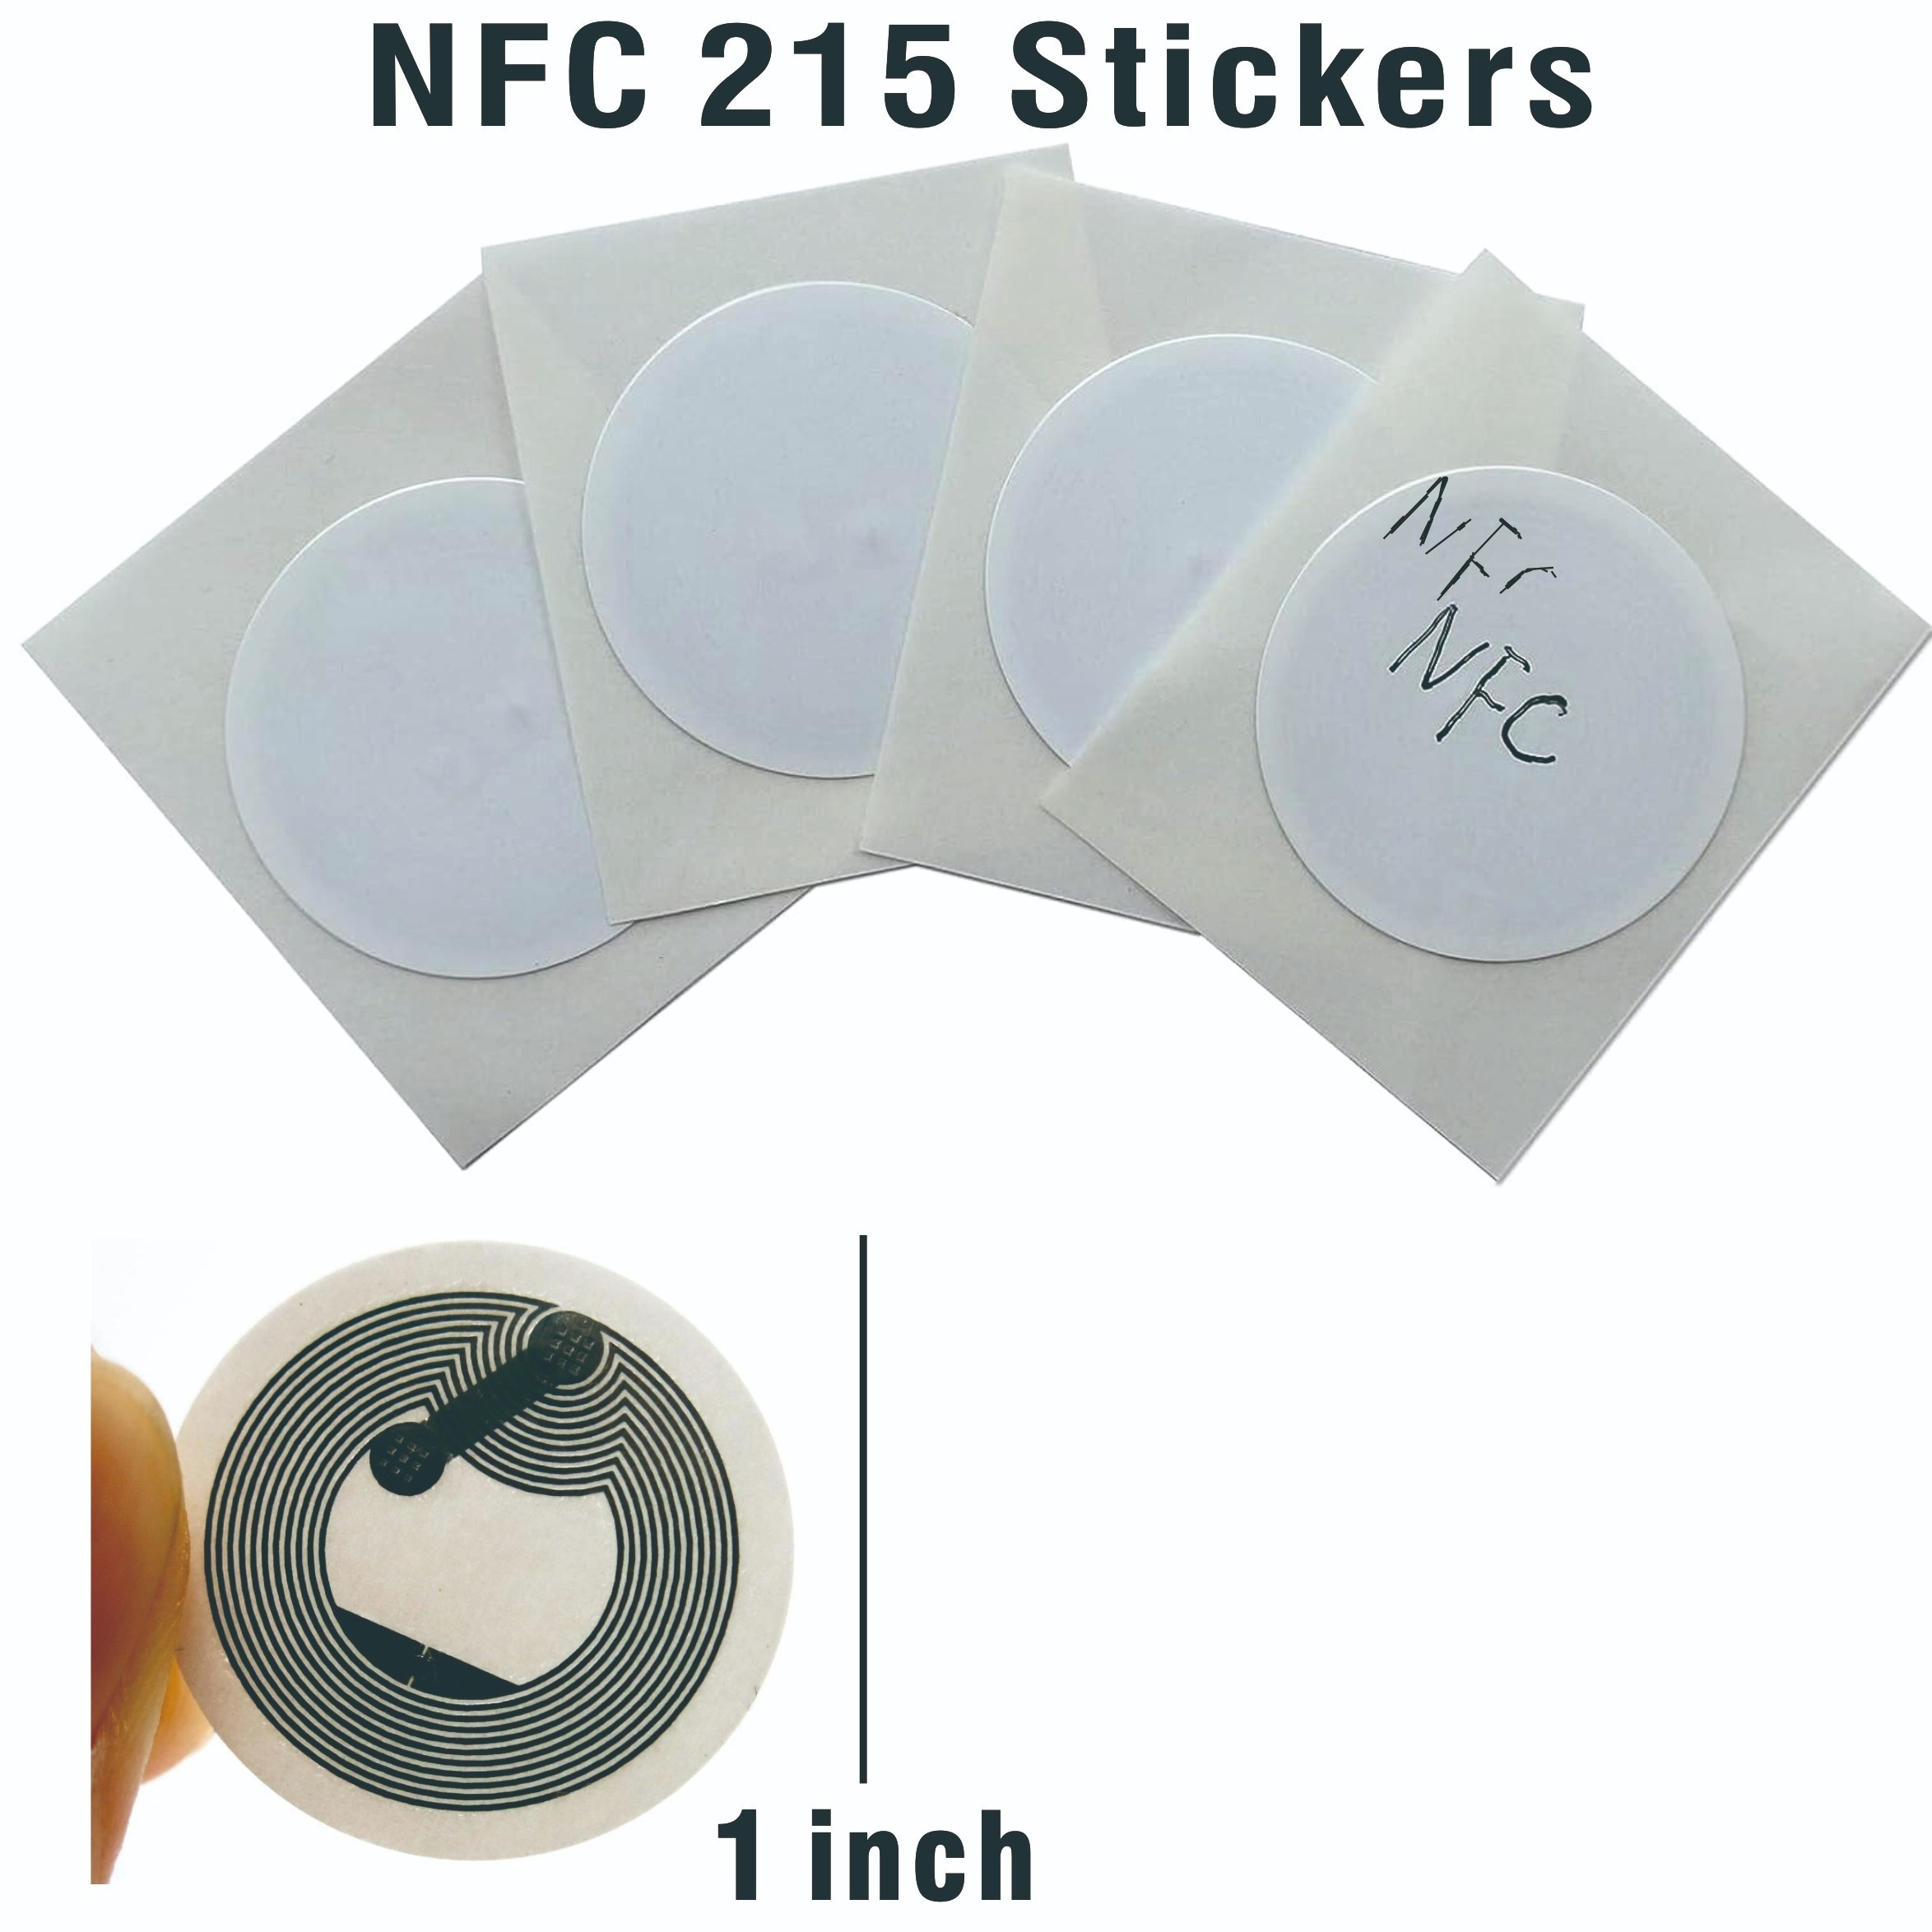 50pcs NFC Tarjetas NFC etiquetas NFC reescribibles Tarjetas NFC Blanco  Tarjeta de visita NFC 215 Etiqueta NFC Programable Etiquetas NFC Android,  para